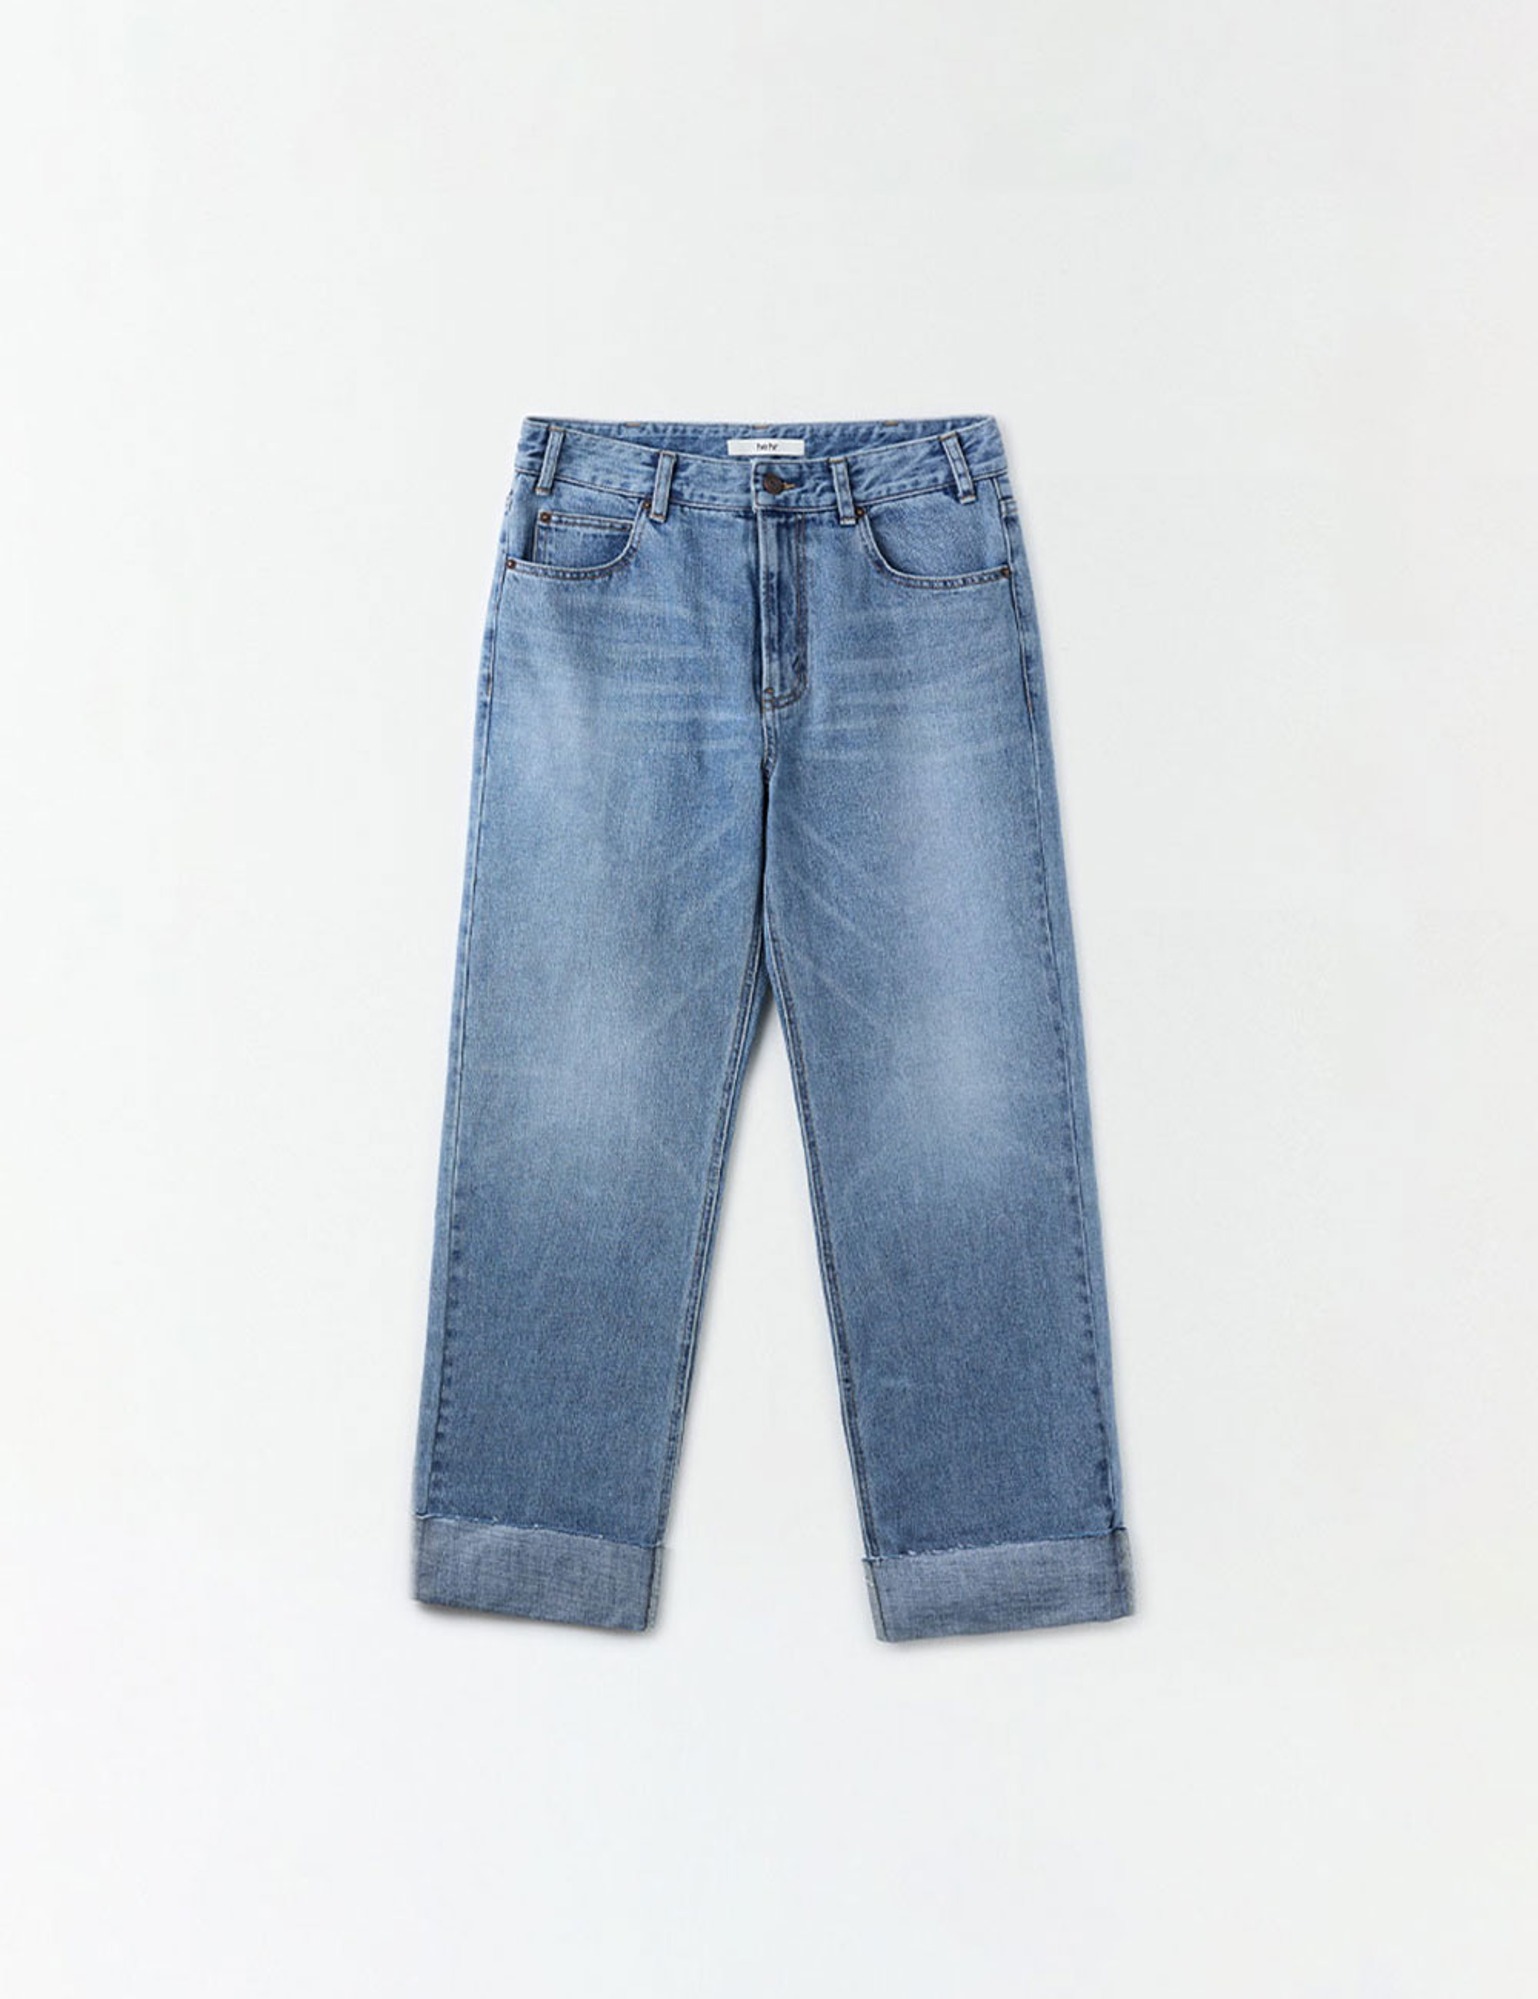 Plain Cut Denim Pants (Blue)